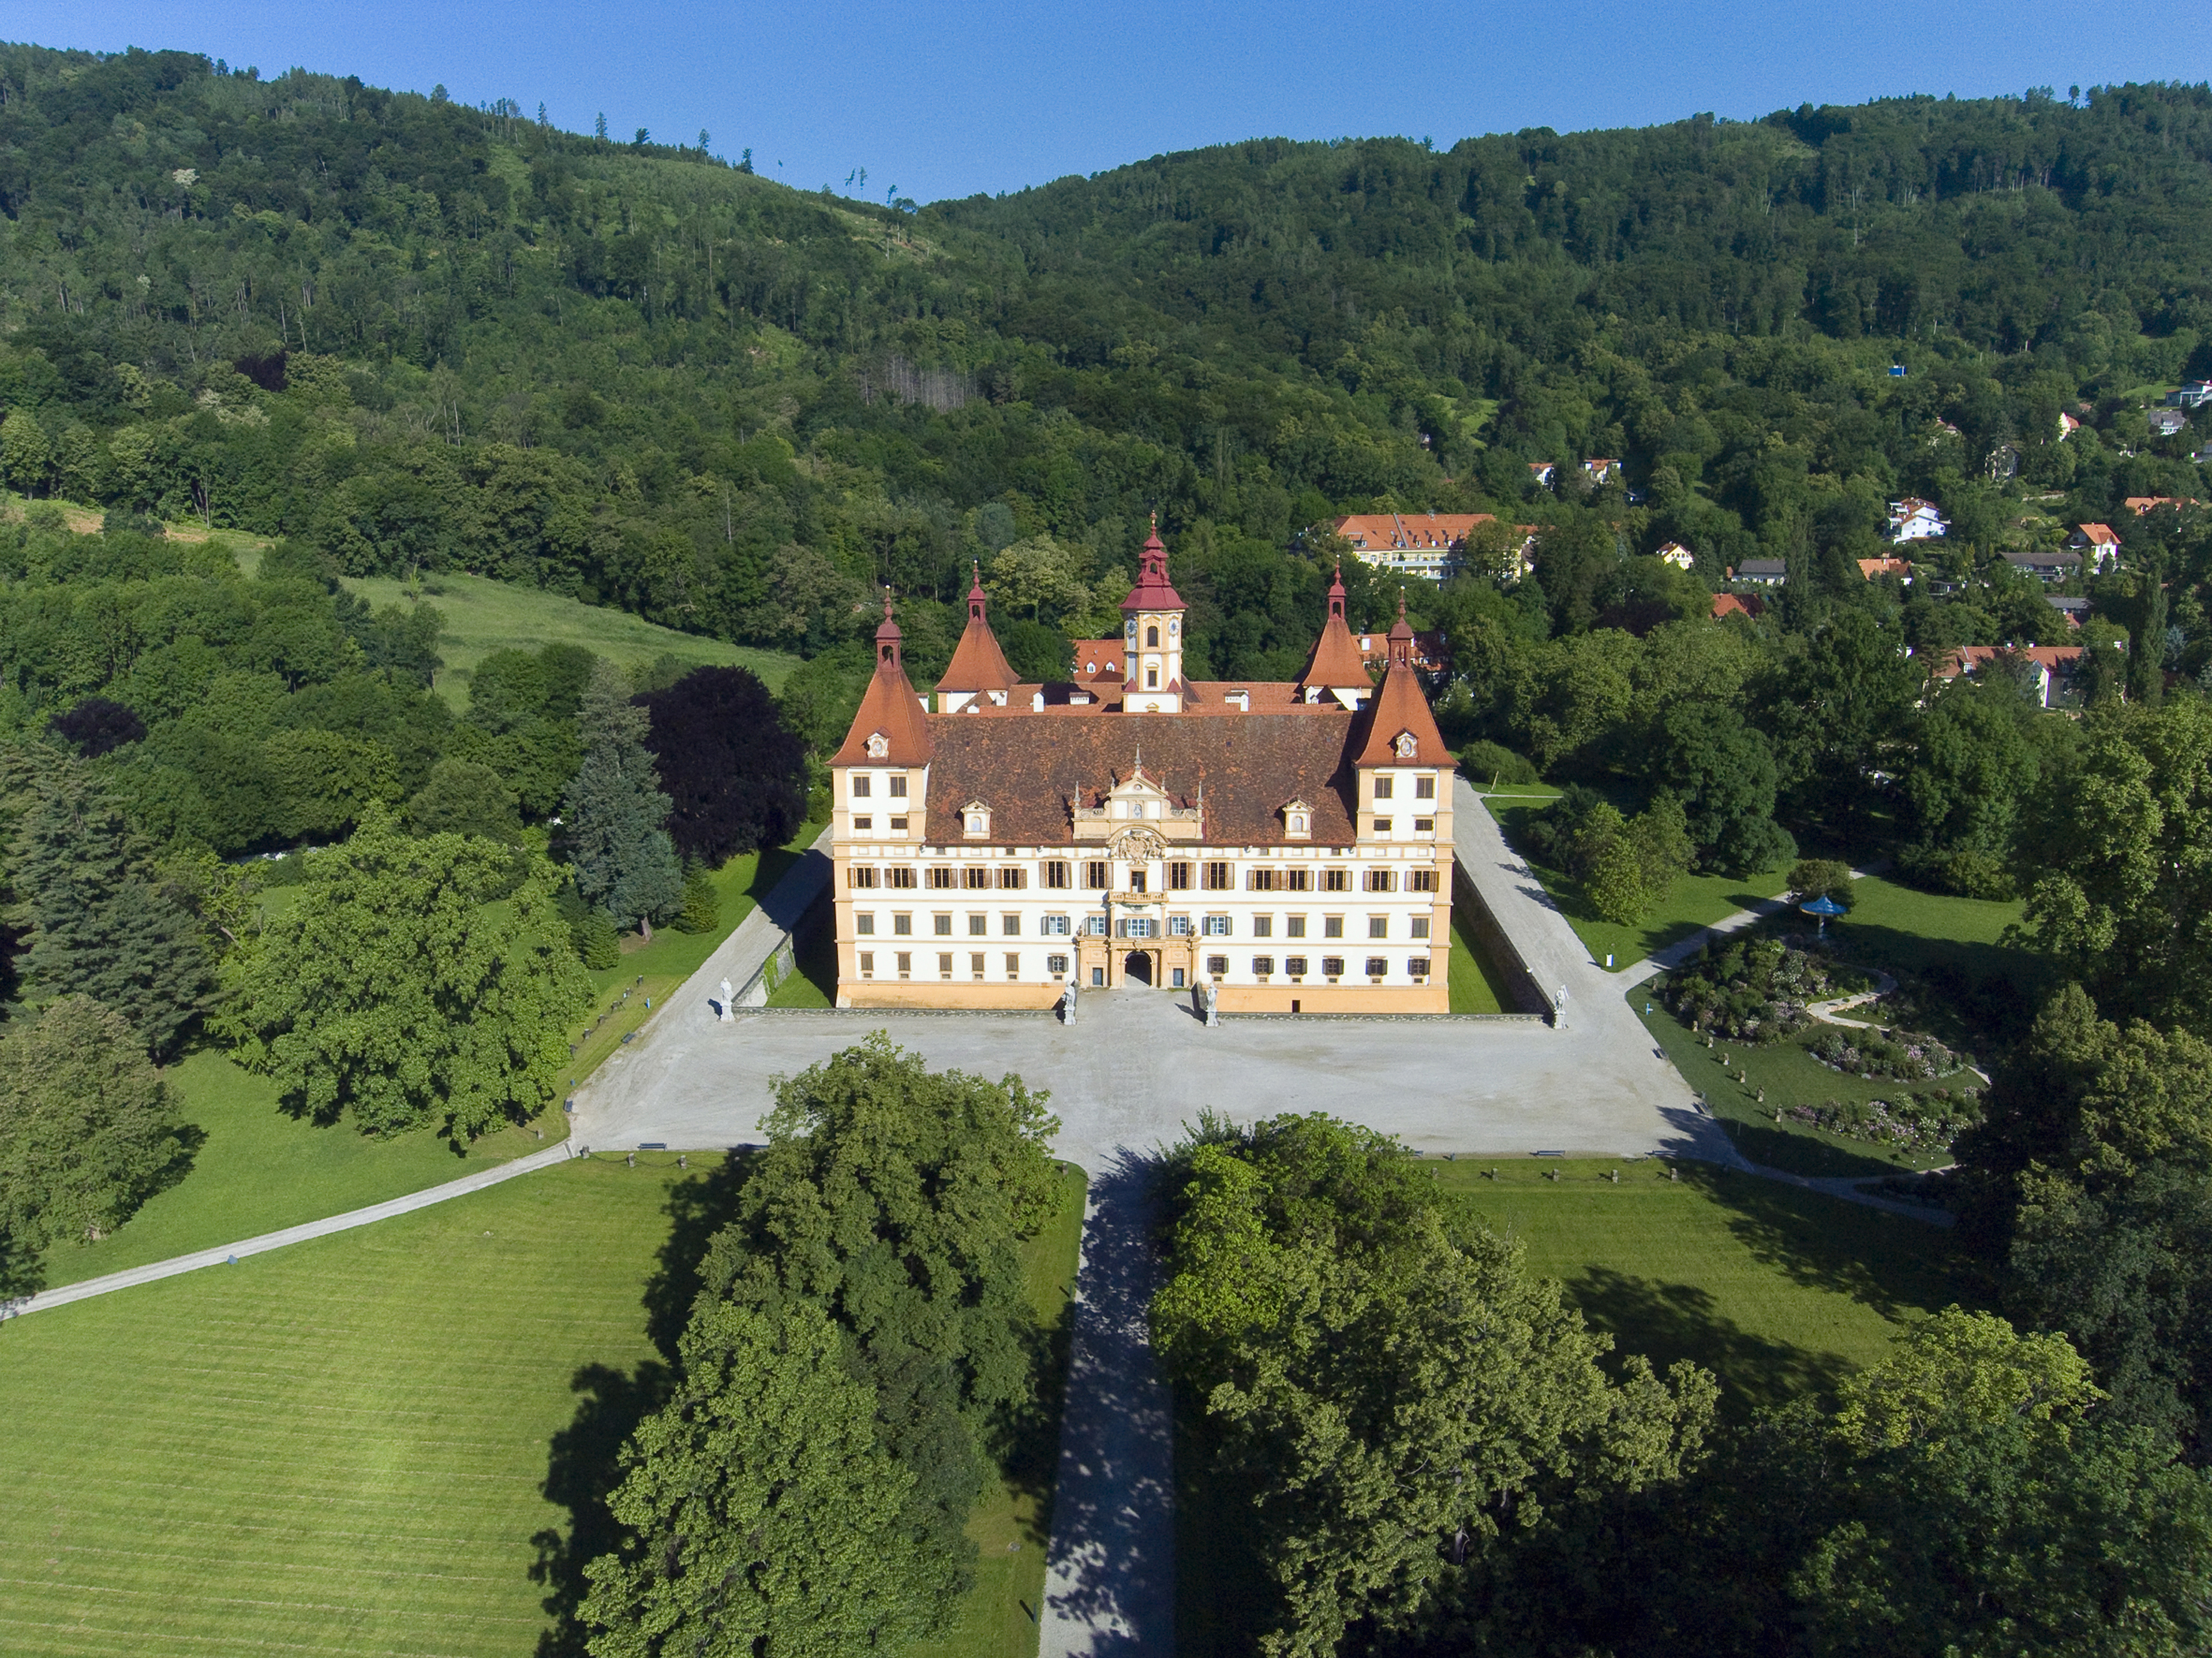 Luftaufnahme des Schloss Eggenbergs und der umliegenden Waldlandschaft.